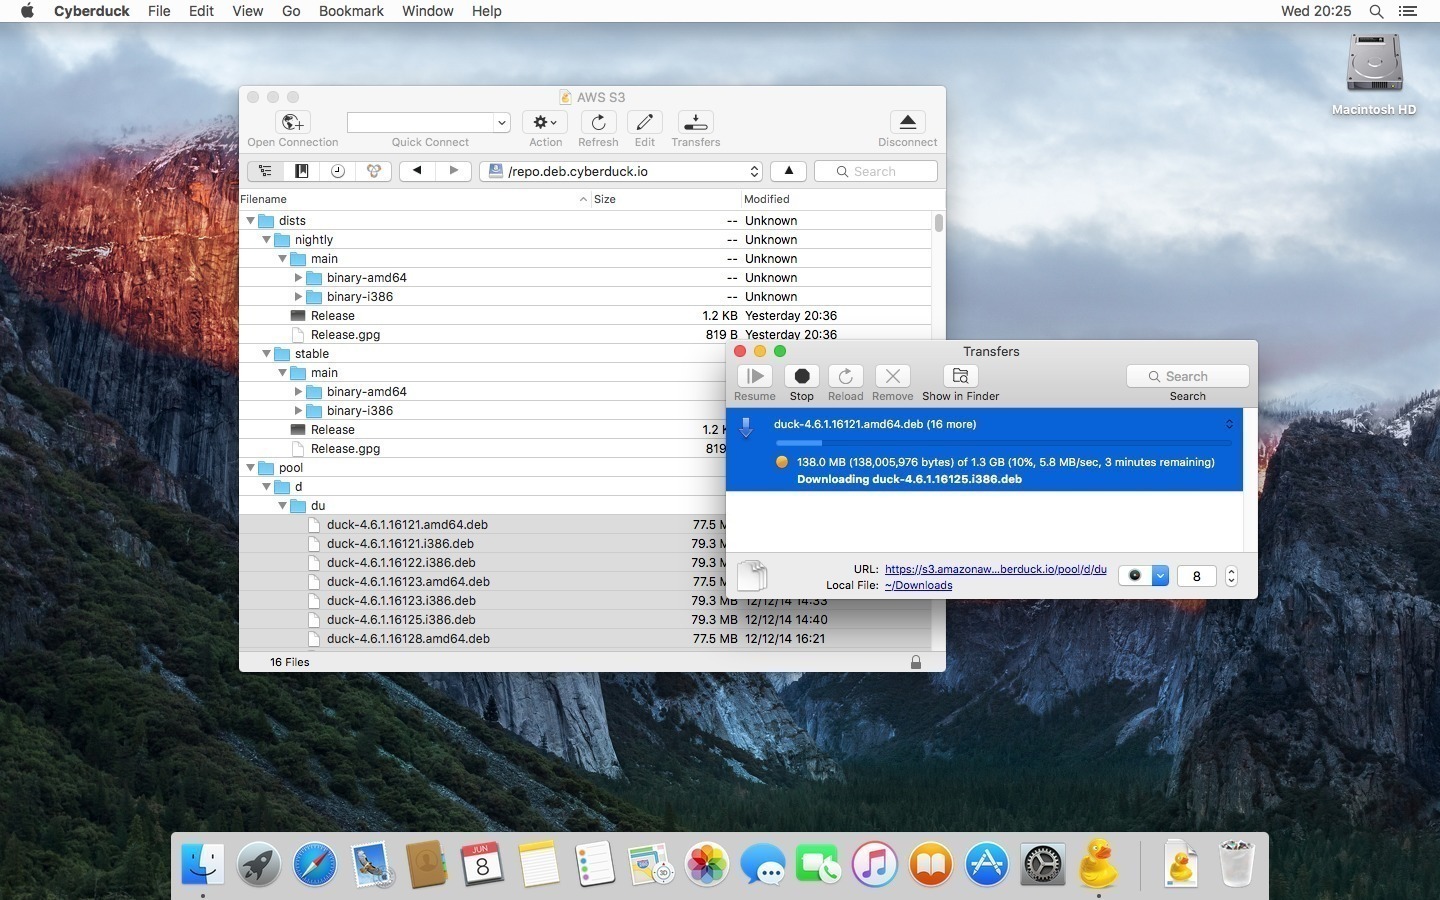 free for apple instal Cyberduck 8.7.0.40629